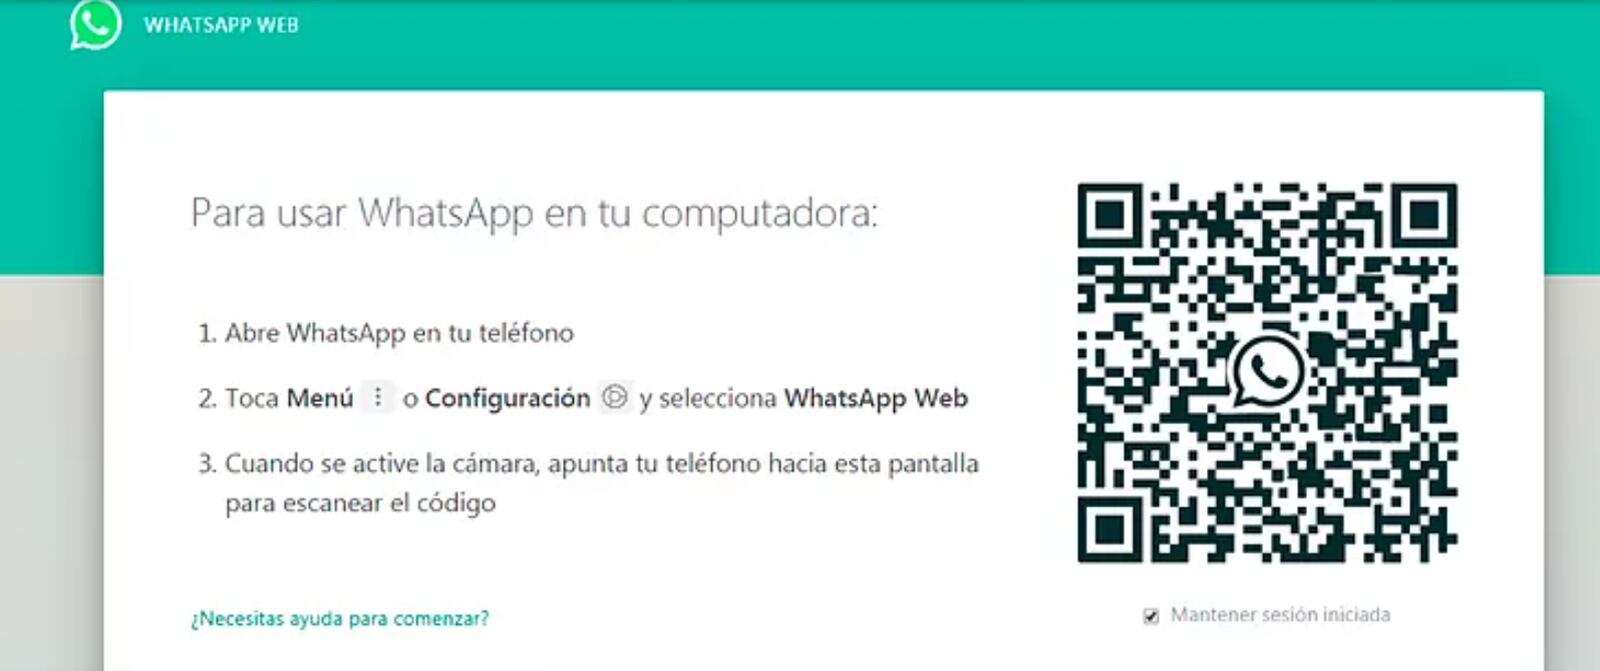 Cómo Iniciar Sesión En Whatsapp Web Con Huella Dactilar 2482